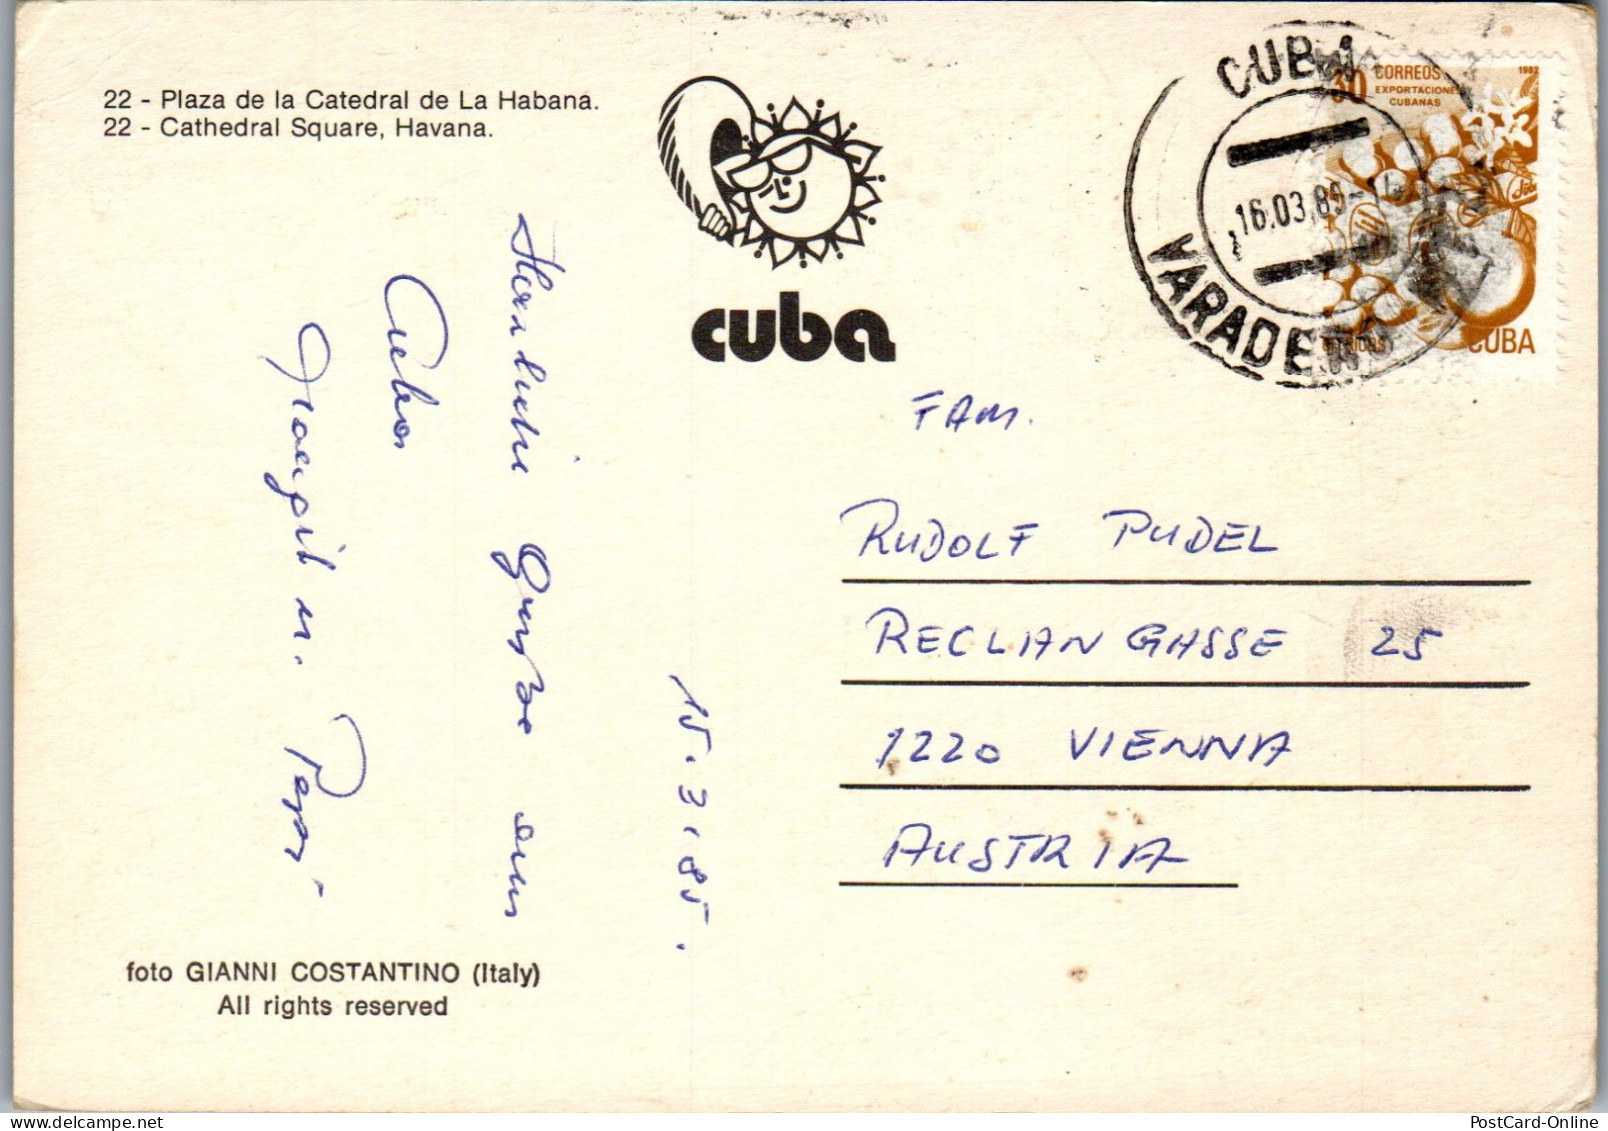 50020 - Cuba - Havana , Kuba , Habana , Plaza De La Cathedral De La Habana - Gelaufen 1985 - Cuba